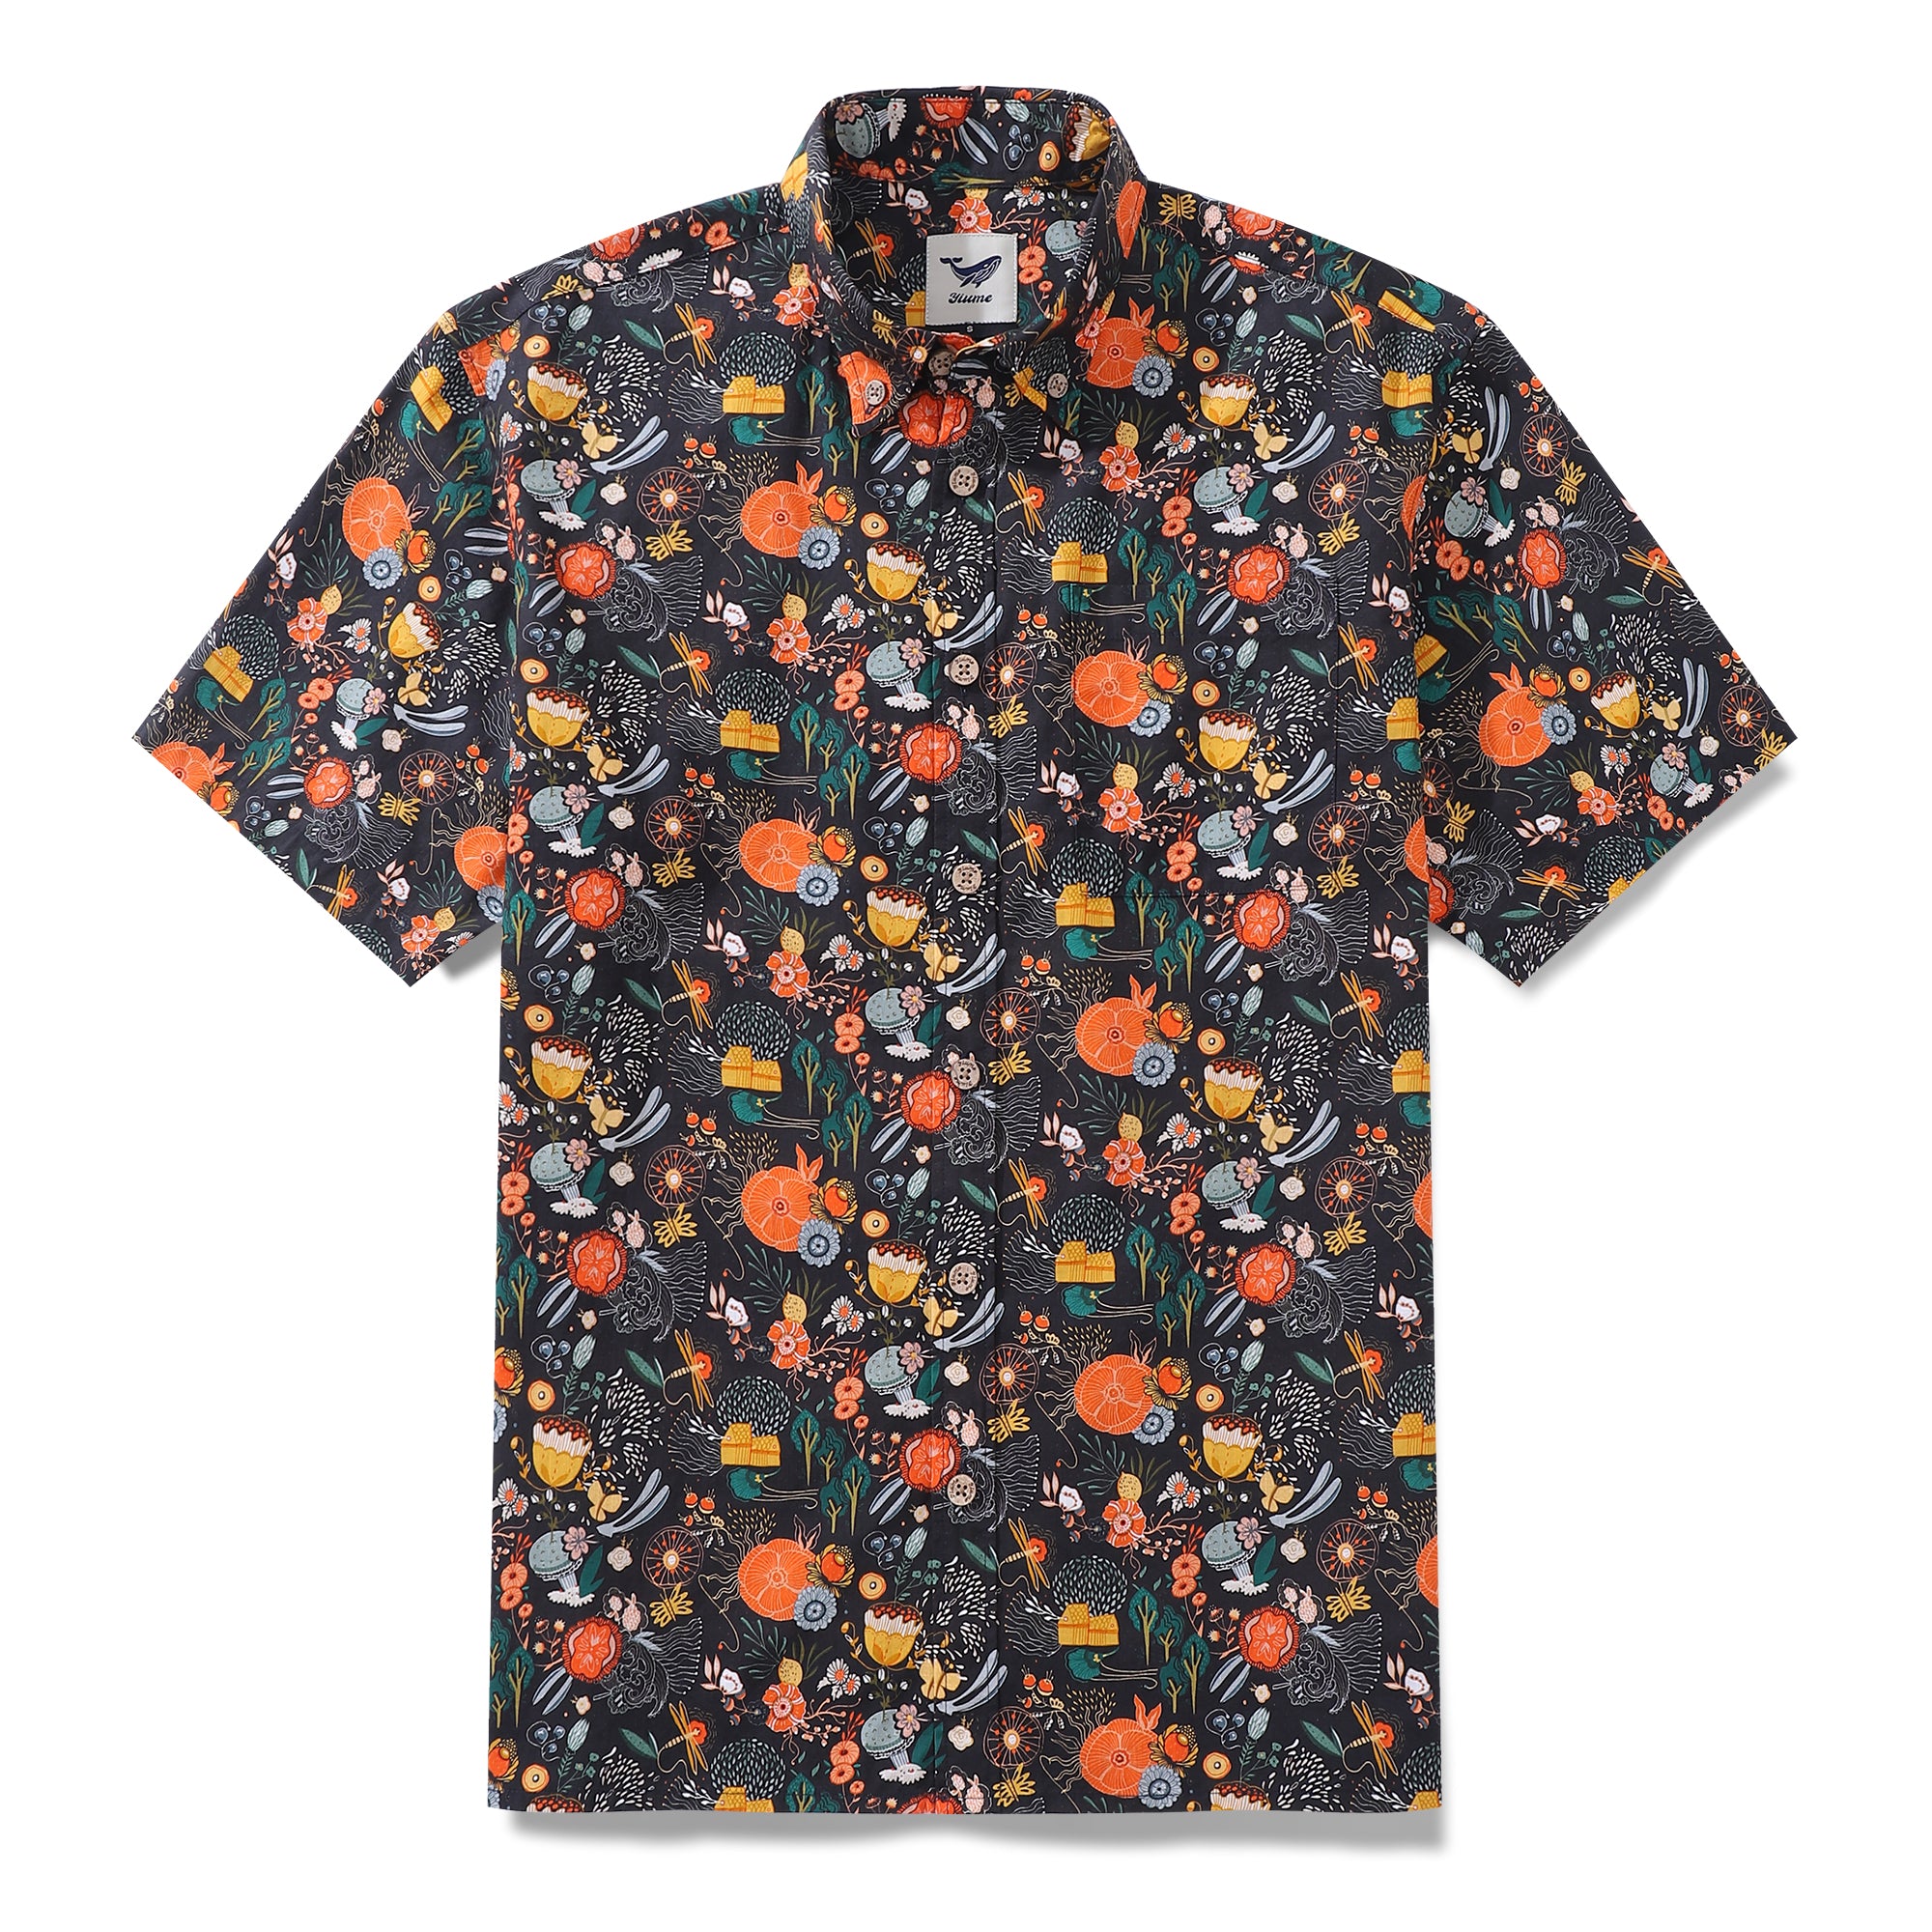 Men's Hawaiian Shirt The Secret Garden Print By Lucille Pattern Cotton Button-down Short Sleeve Aloha Shirt